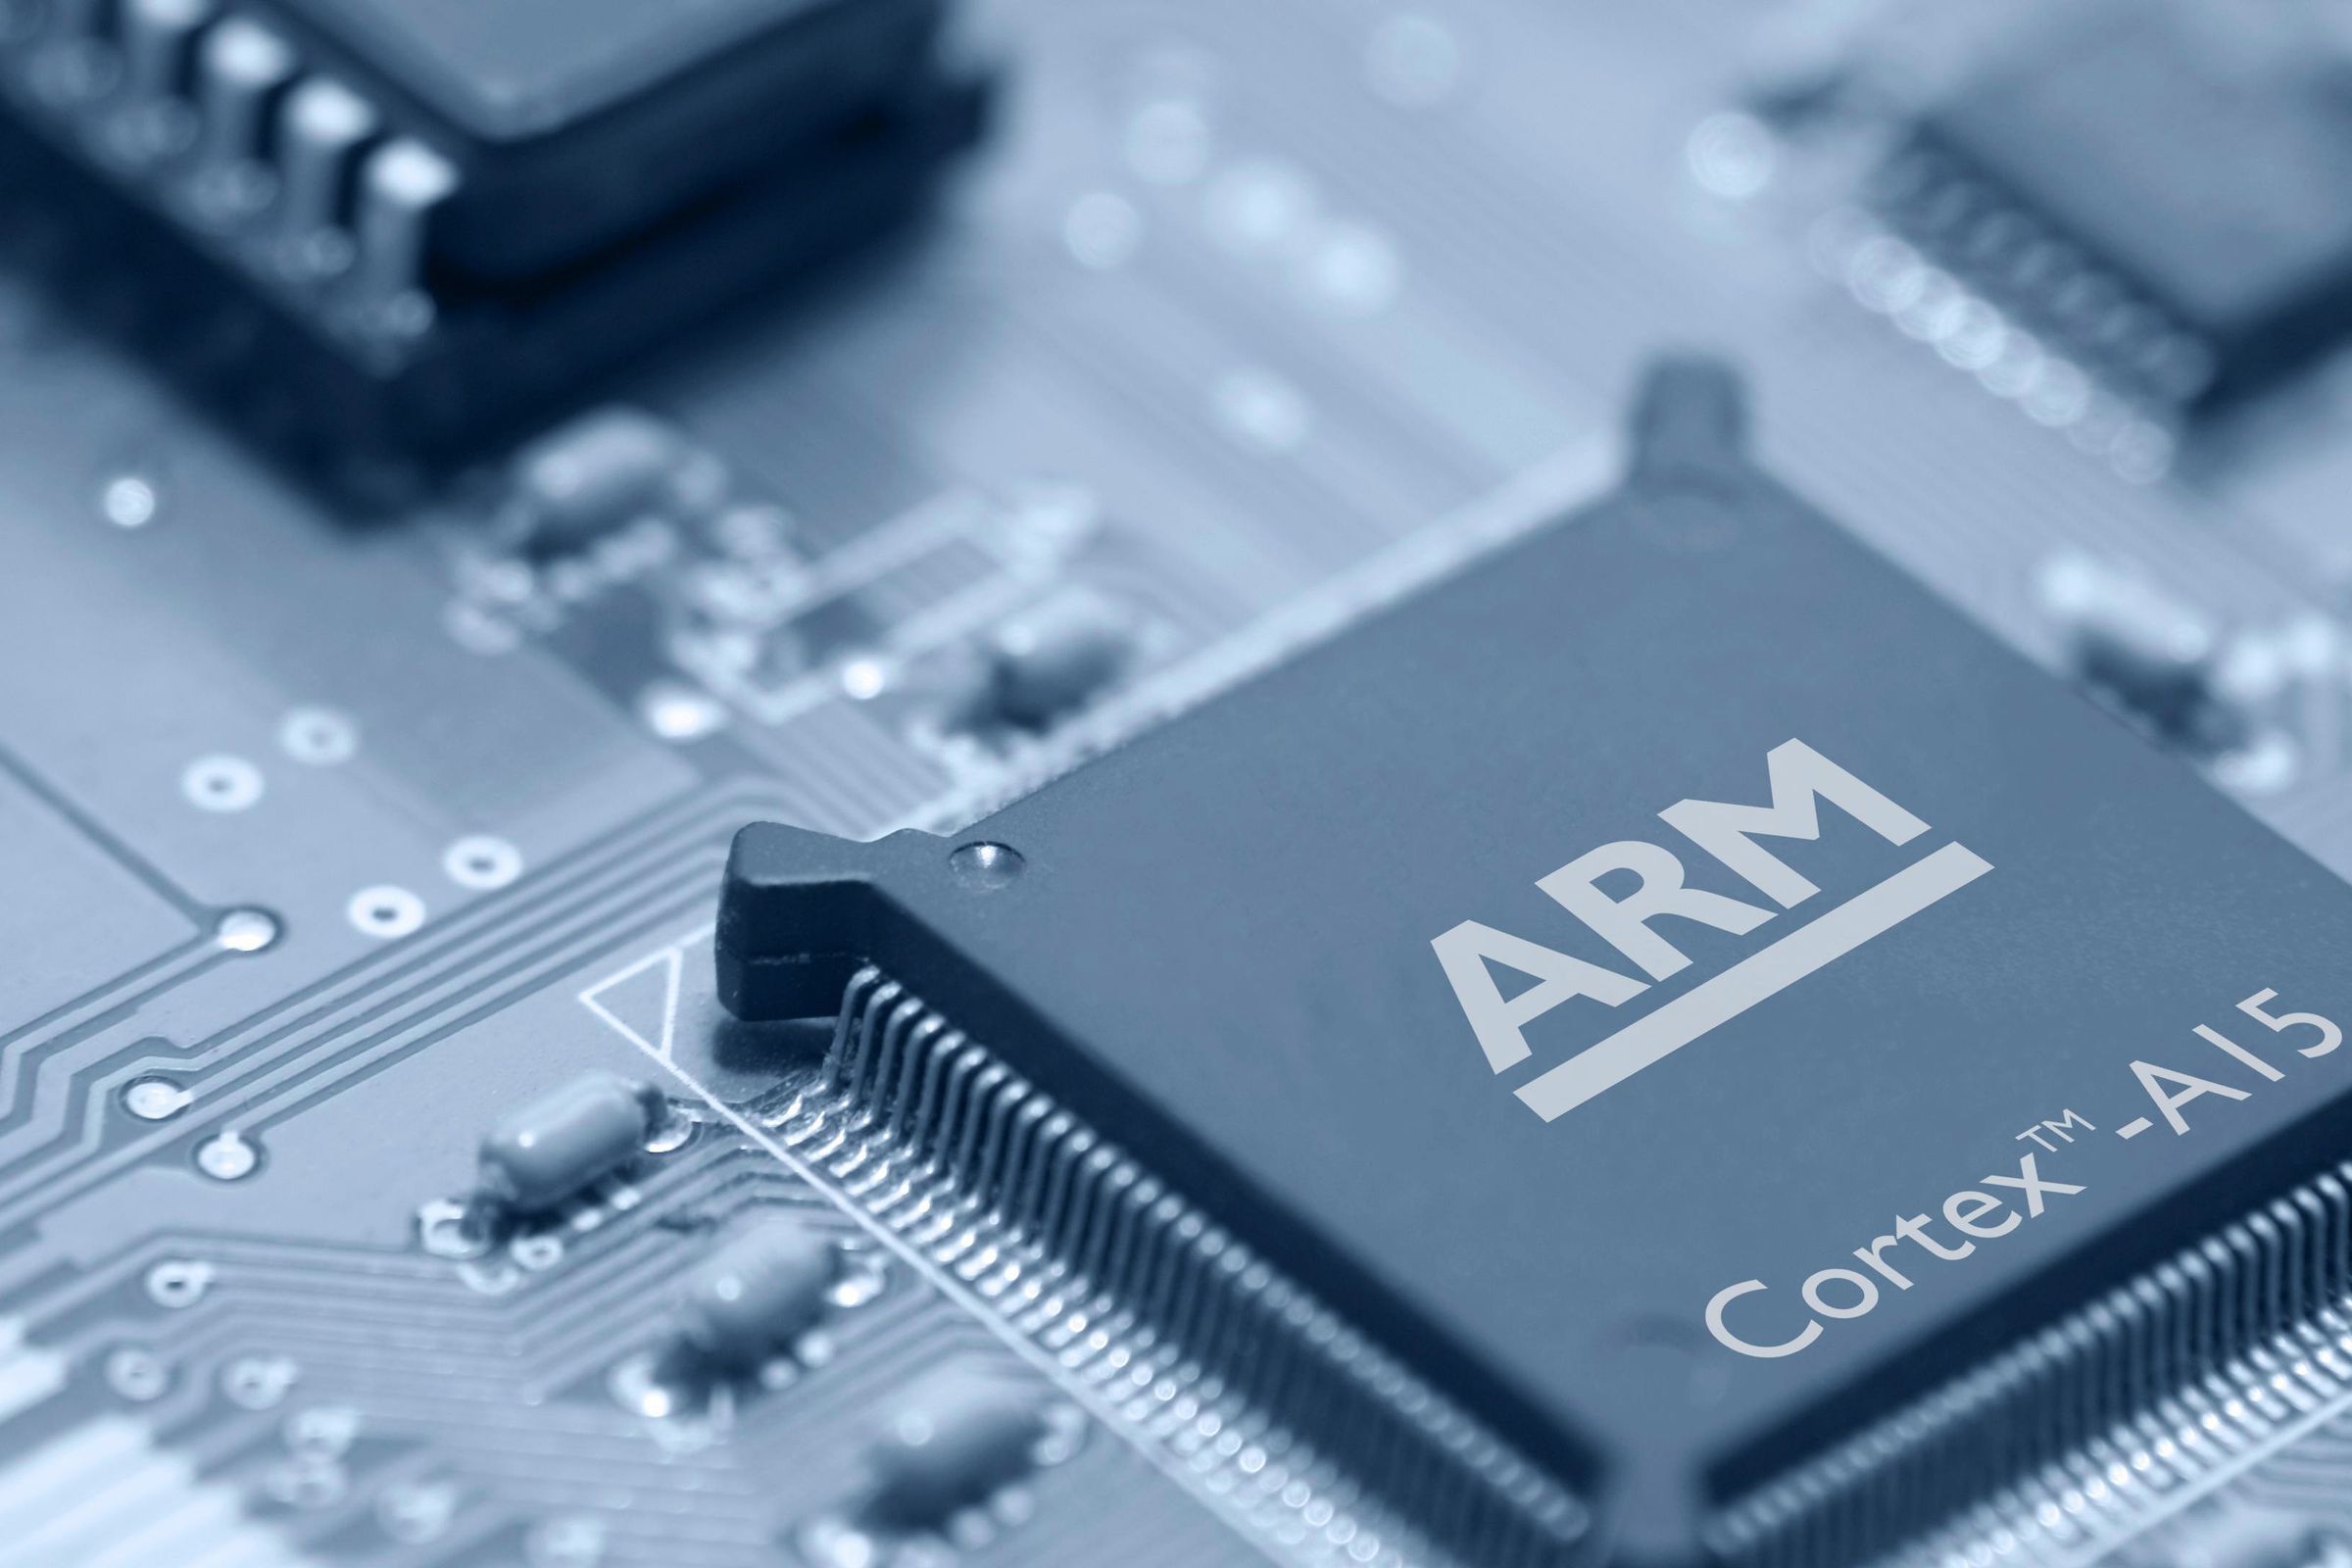 An ARM Cortex-A15 chip.